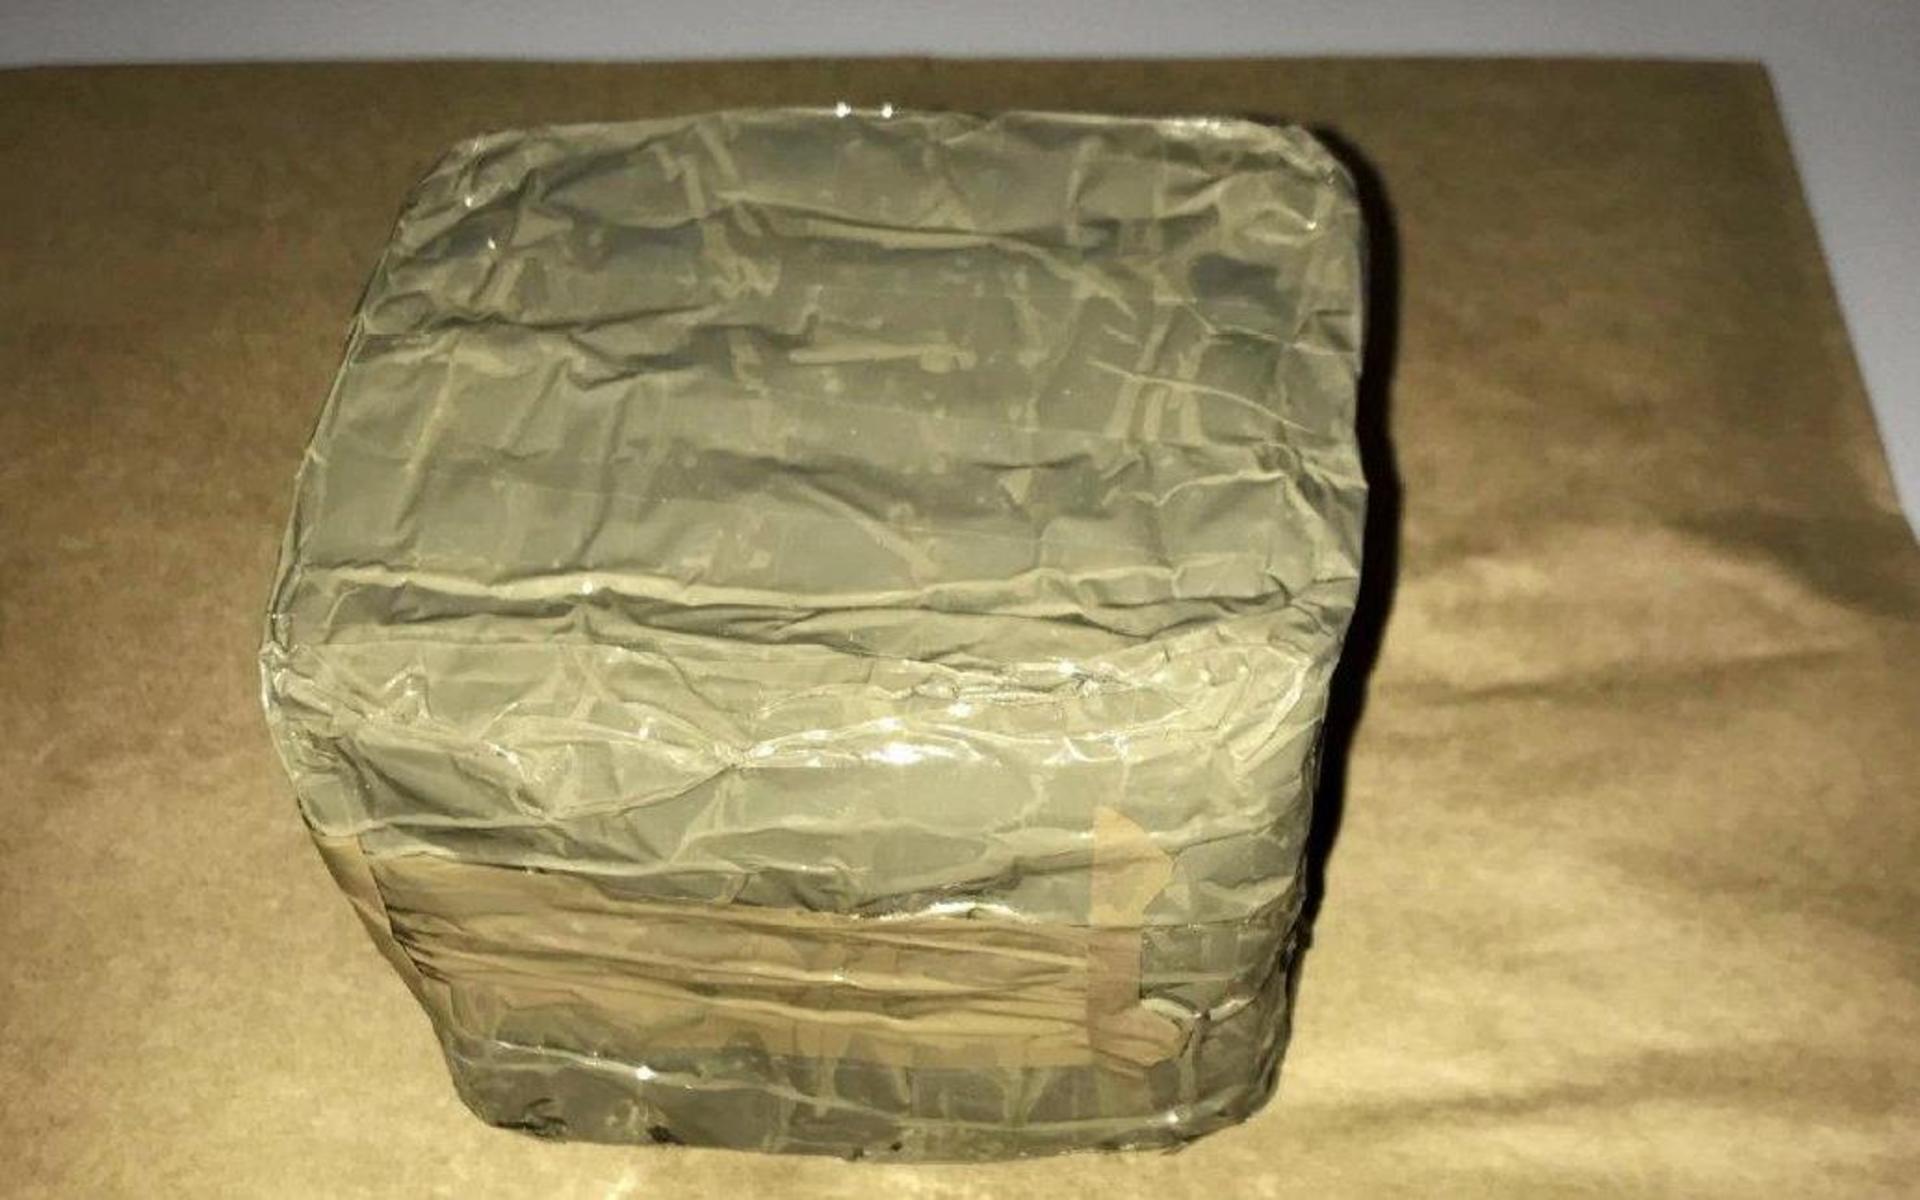 En ung man från en Stockholmsförort greps efter att ha köpt ett kilo hasch. Han försökte gömma den fyrkantiga förpackningen i ärmen på en jacka. 